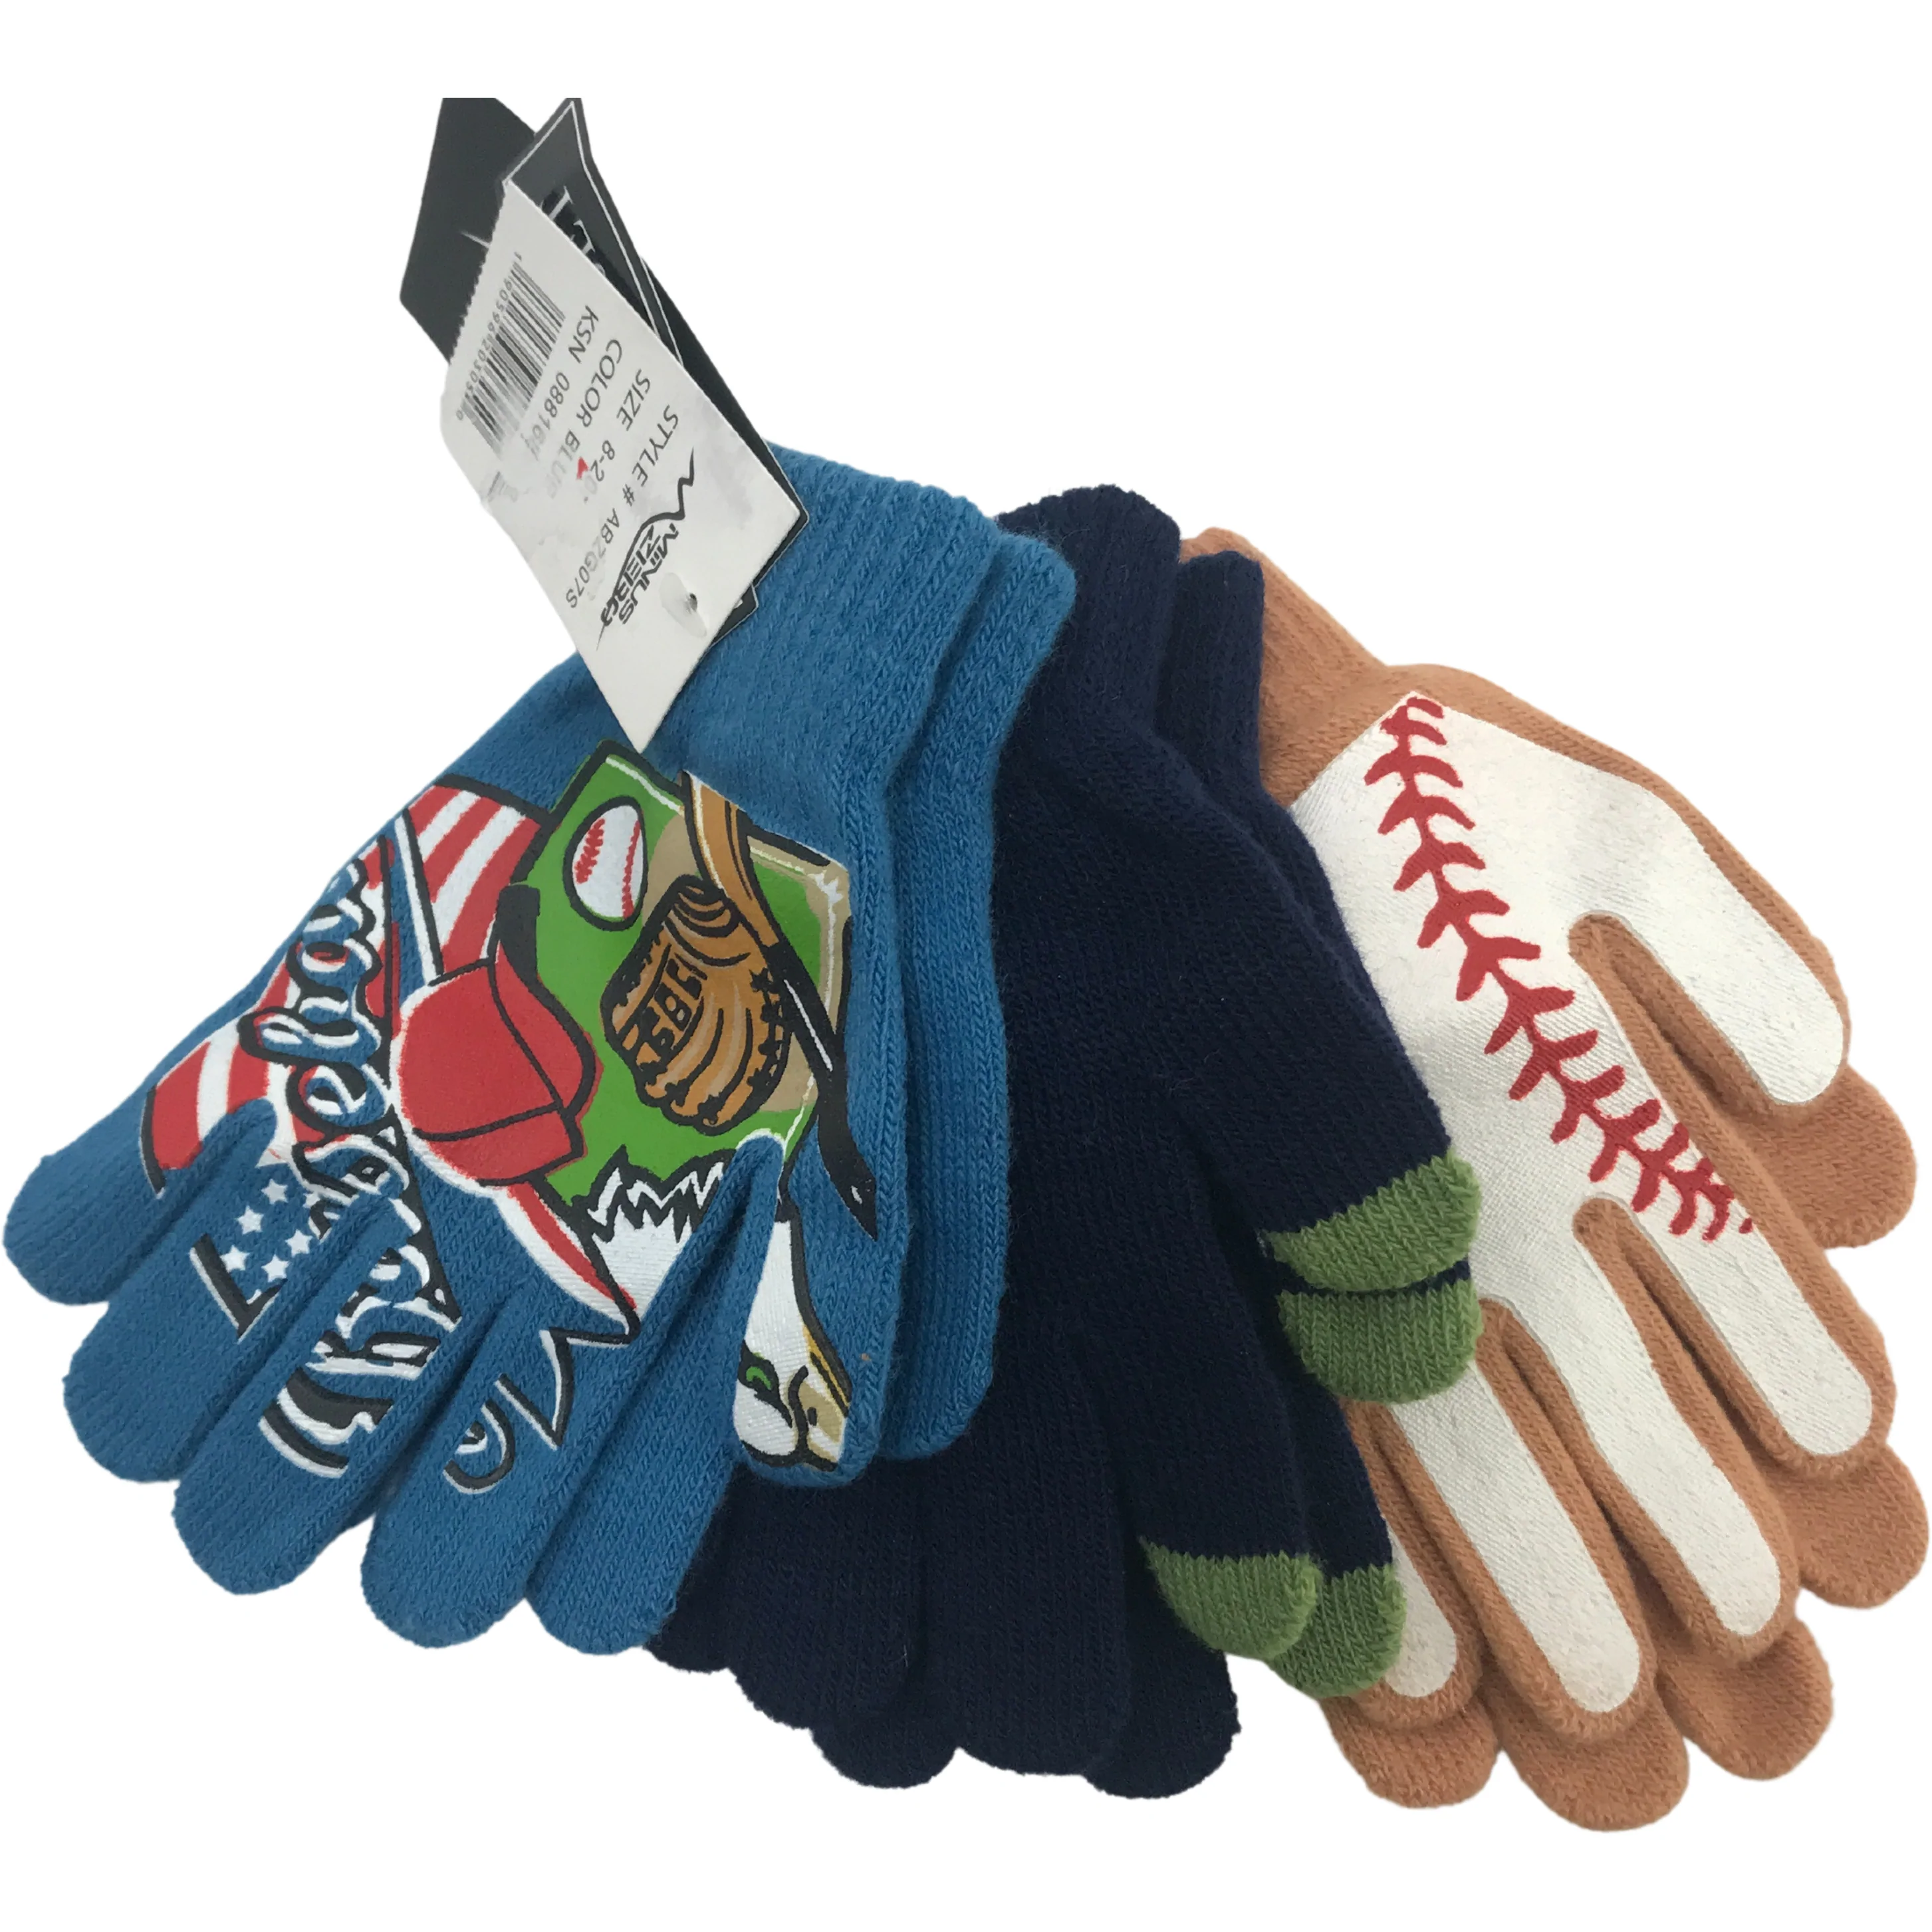 Minus Zero Children's Winter Gloves / Boy's Gloves / Lightweight Gloves / 3 Pack / Blue & Tan / 8-20